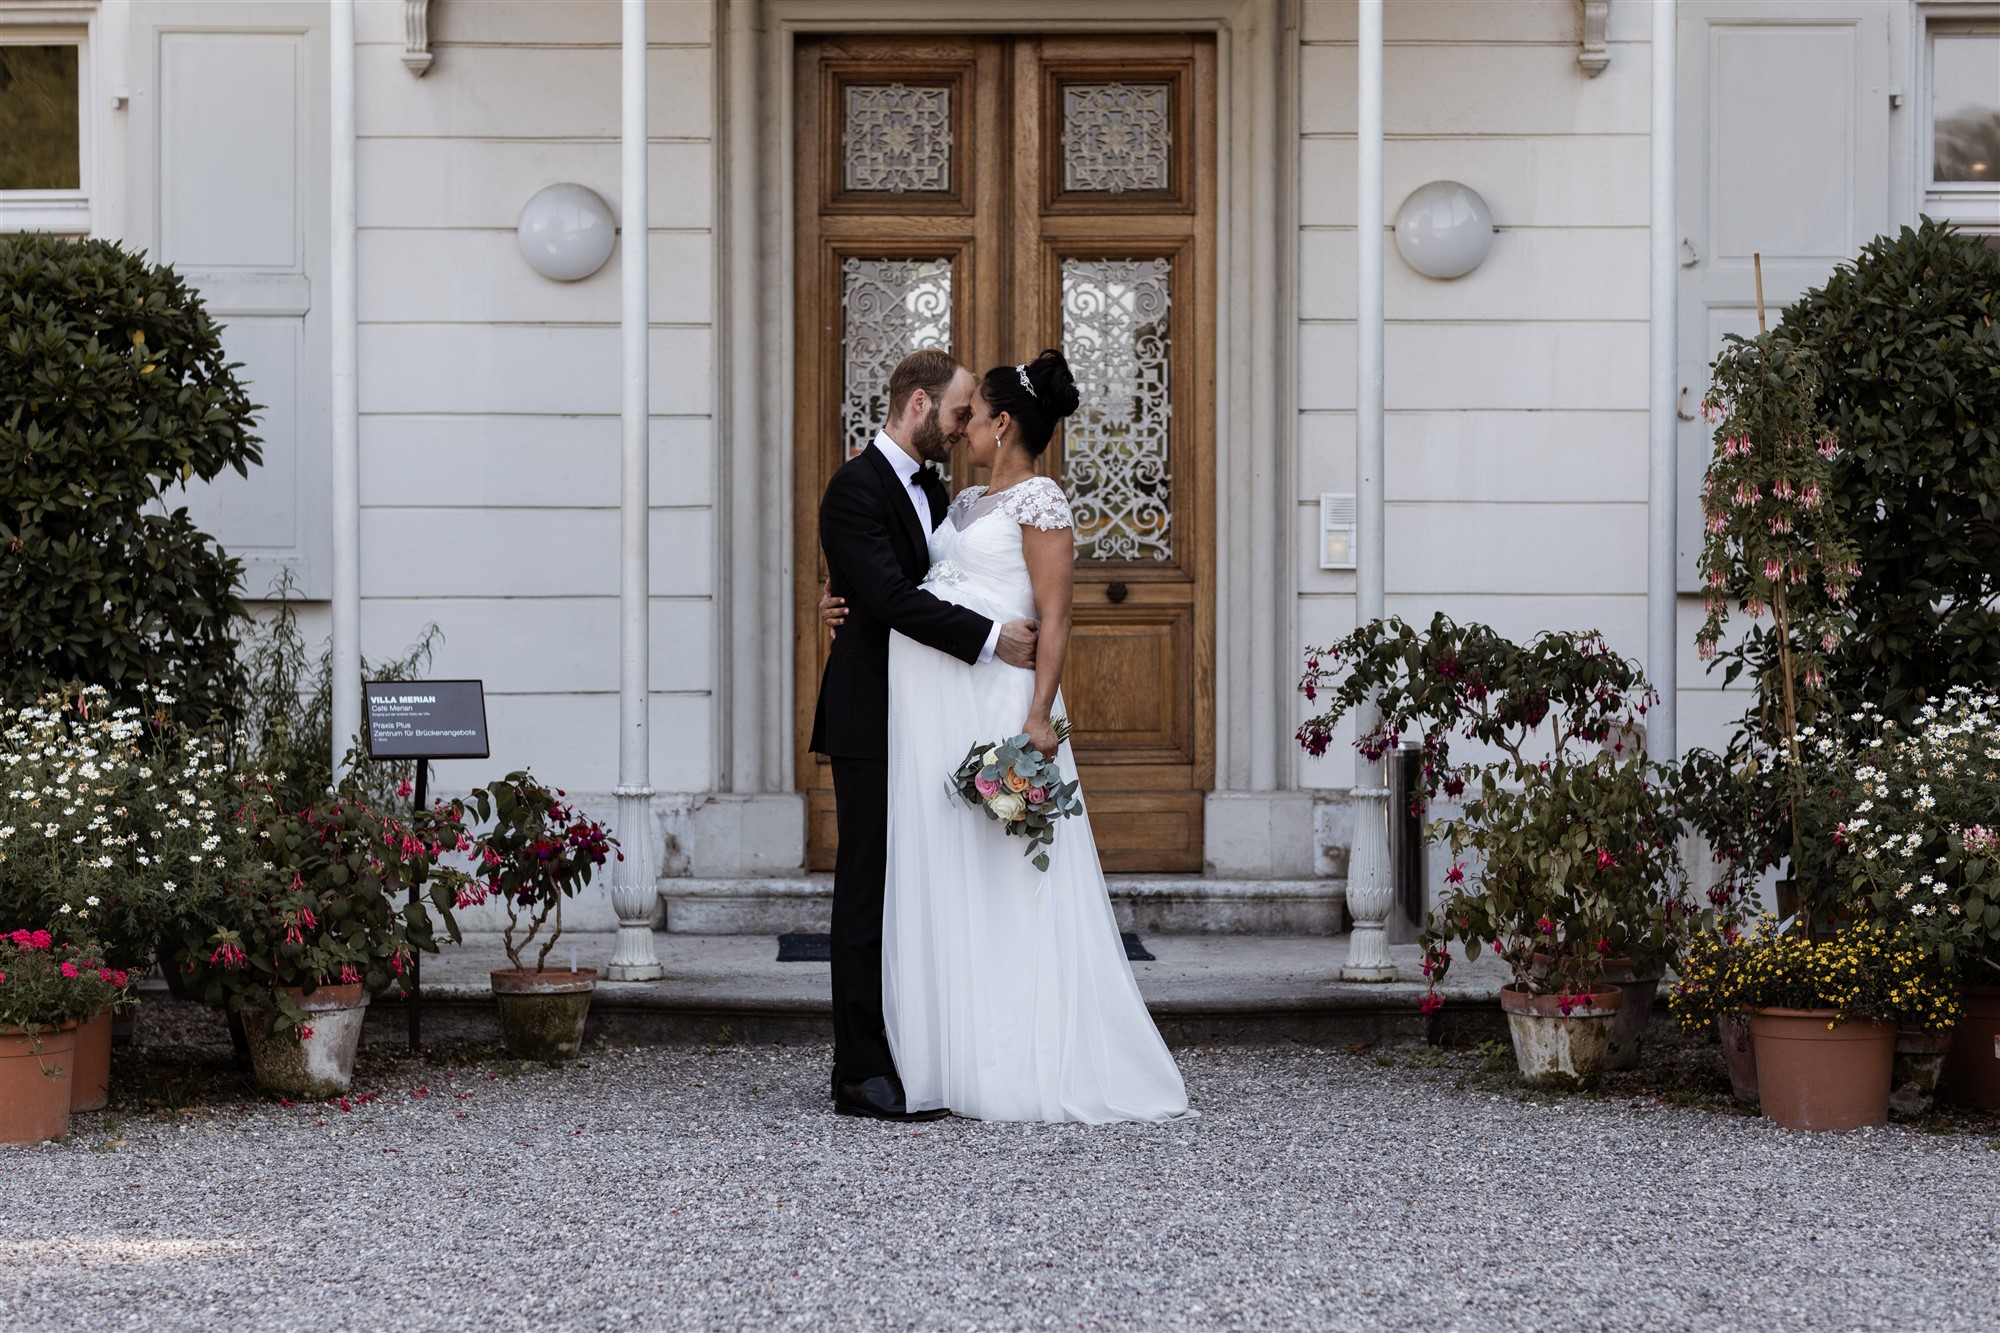 Brautpaarfotoshooting vor der Villa Merian in den Merian Gärten